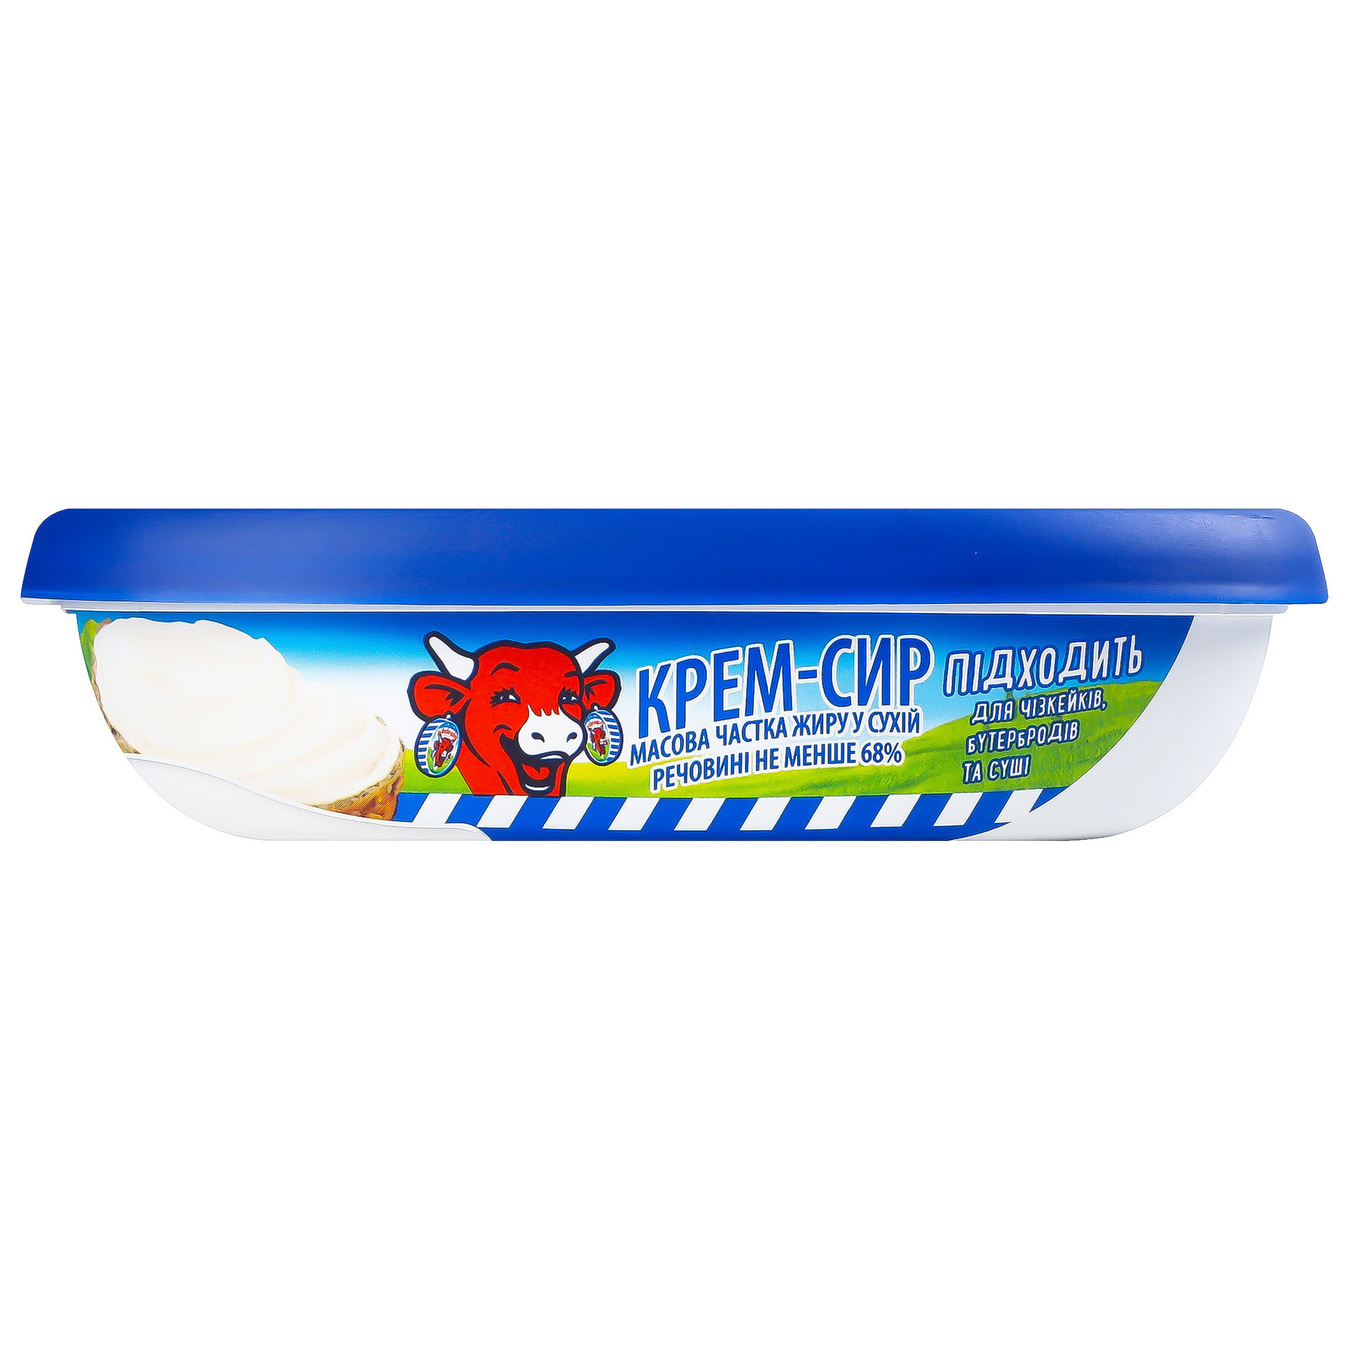 Vesela Korivka Cream Cheese 68% 150g 2